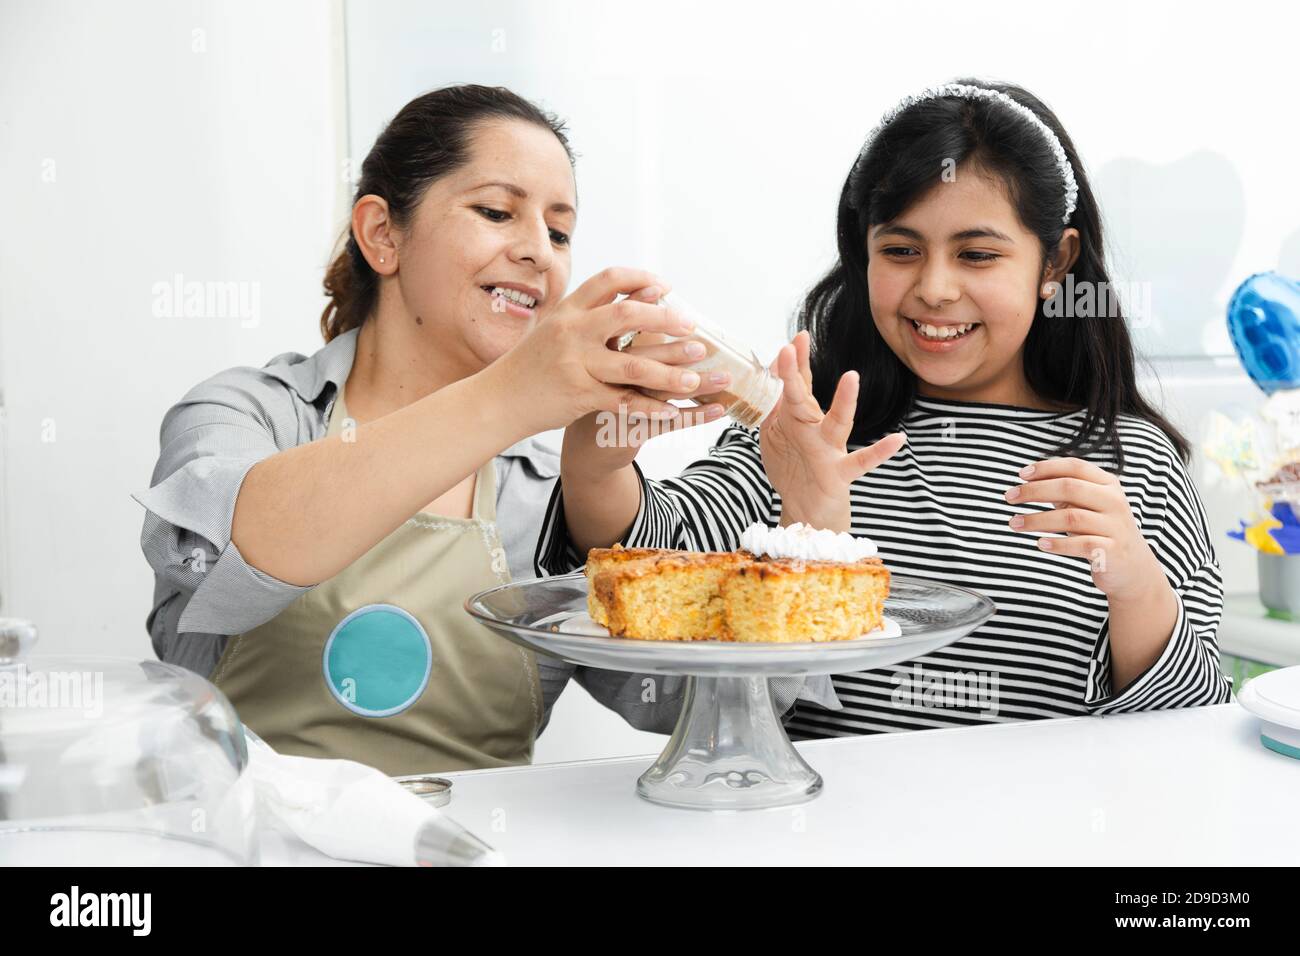 Maman et fille hispanique décorant un gâteau avec de la crème fouettée - maman latine enseignant à sa fille de décorer un gâteau - mère et fille s'amuser c Banque D'Images